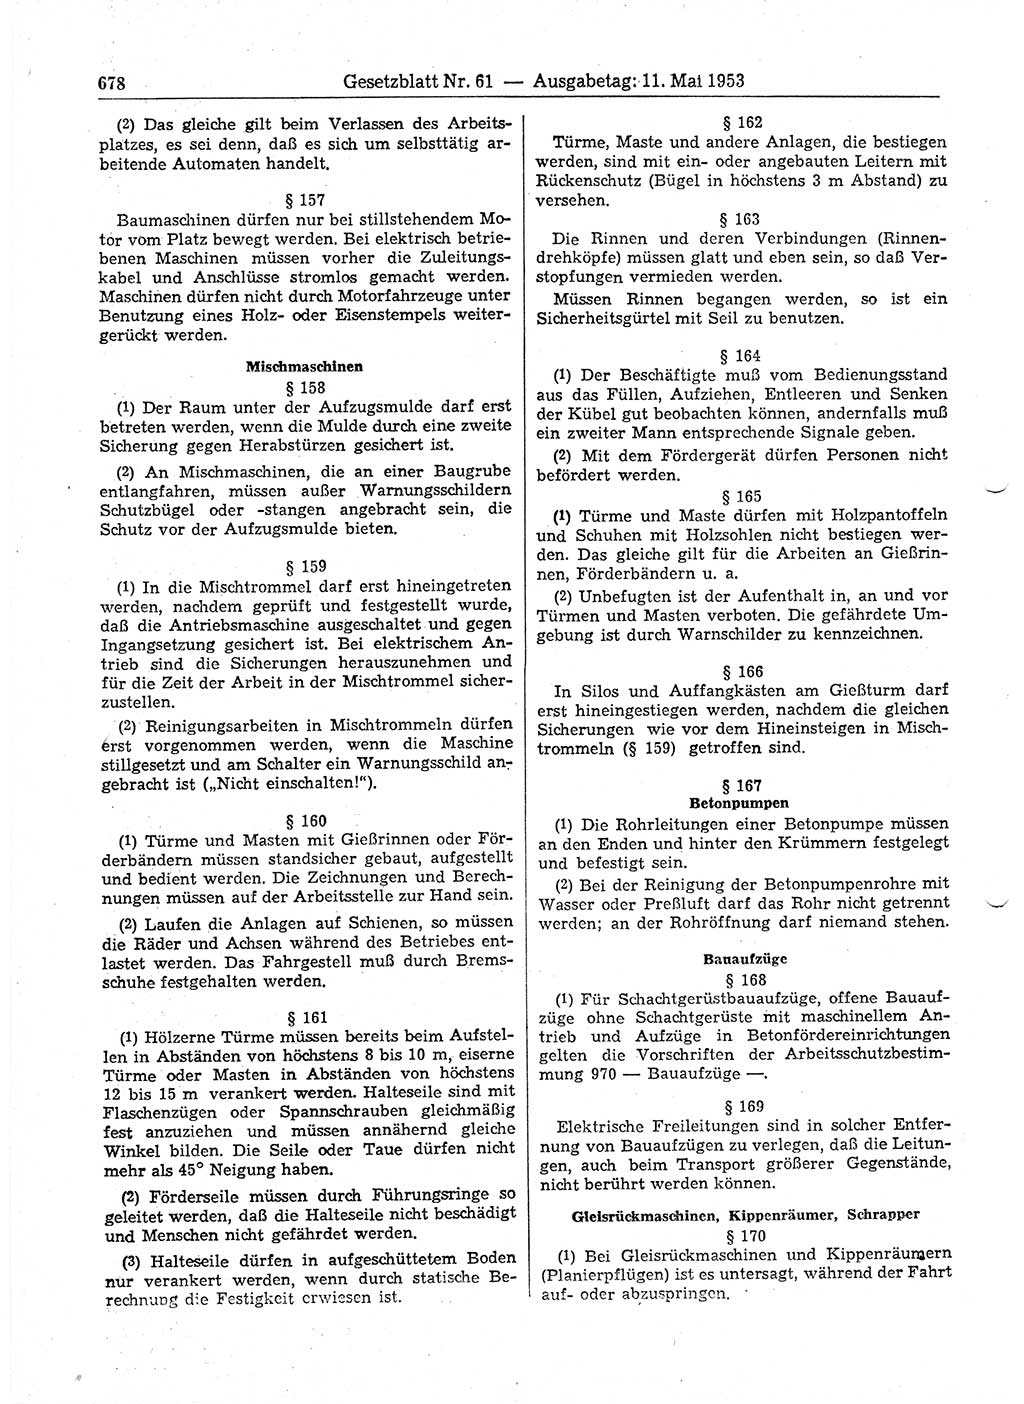 Gesetzblatt (GBl.) der Deutschen Demokratischen Republik (DDR) 1953, Seite 678 (GBl. DDR 1953, S. 678)